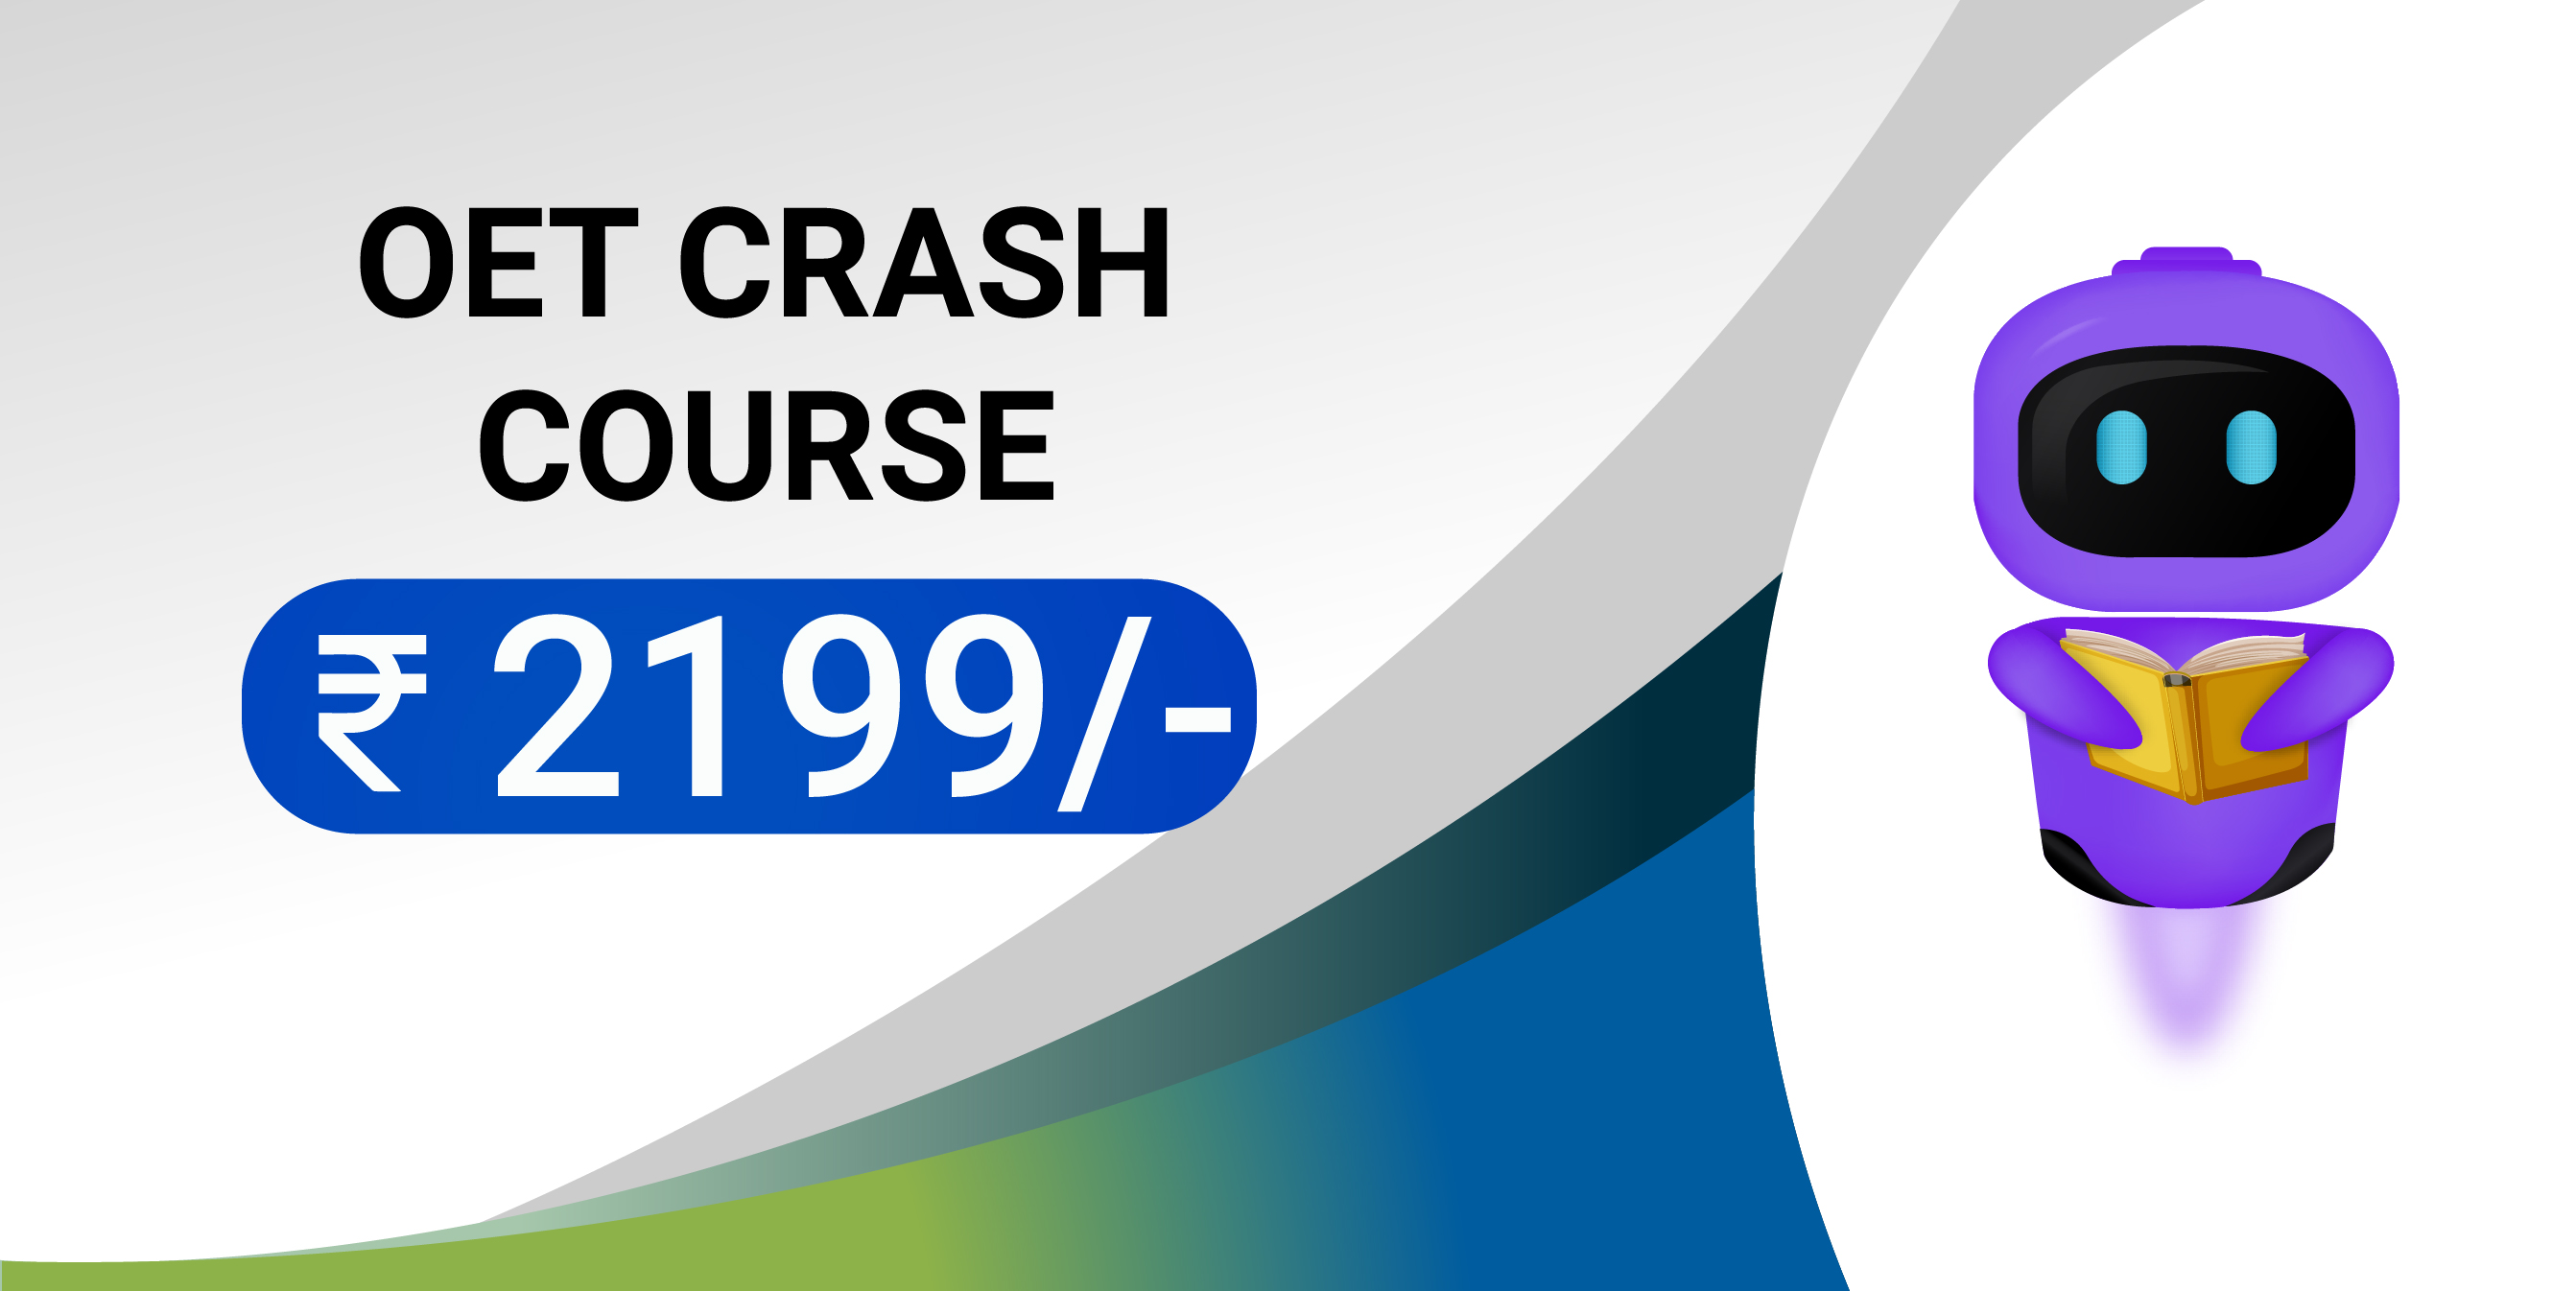 OET Crash Course